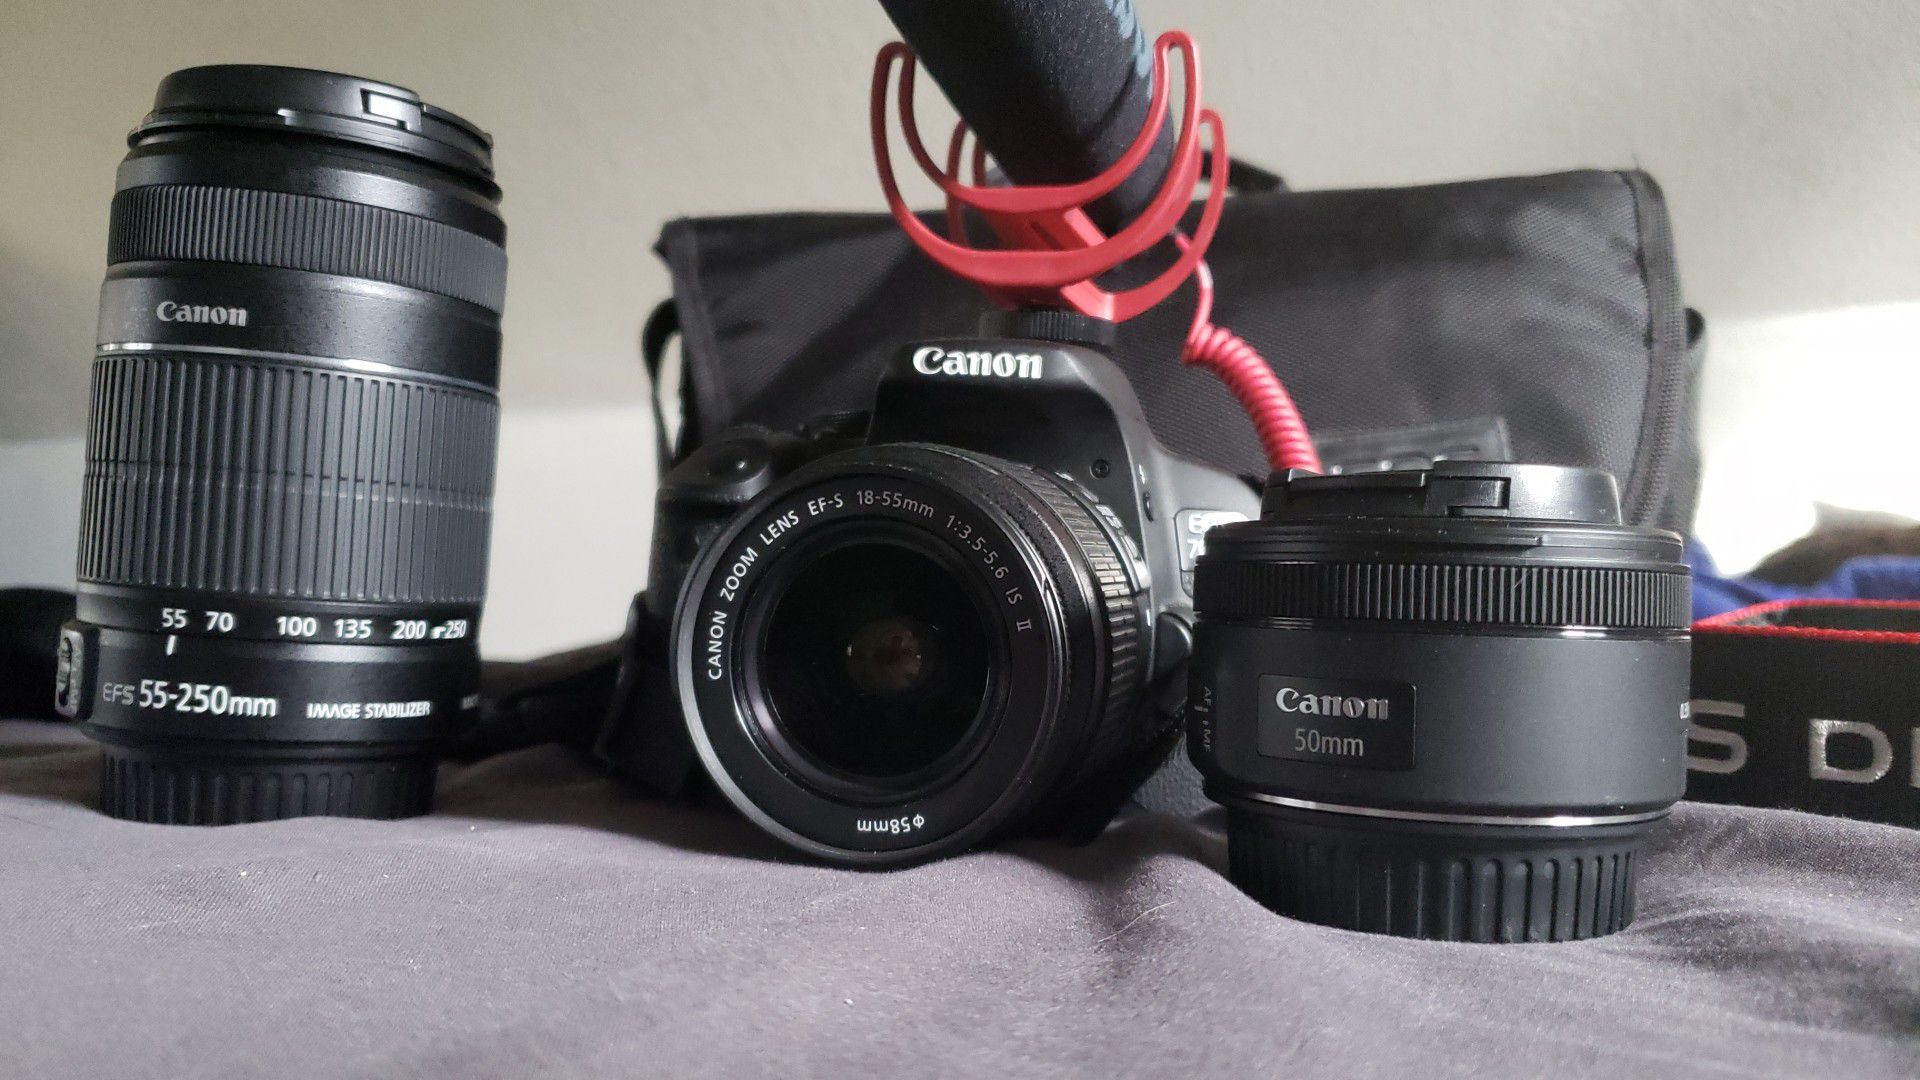 Canon 700d w/kit lense & extra lenses 55-250mm/50mm 1.8/Rode mic/eos bag